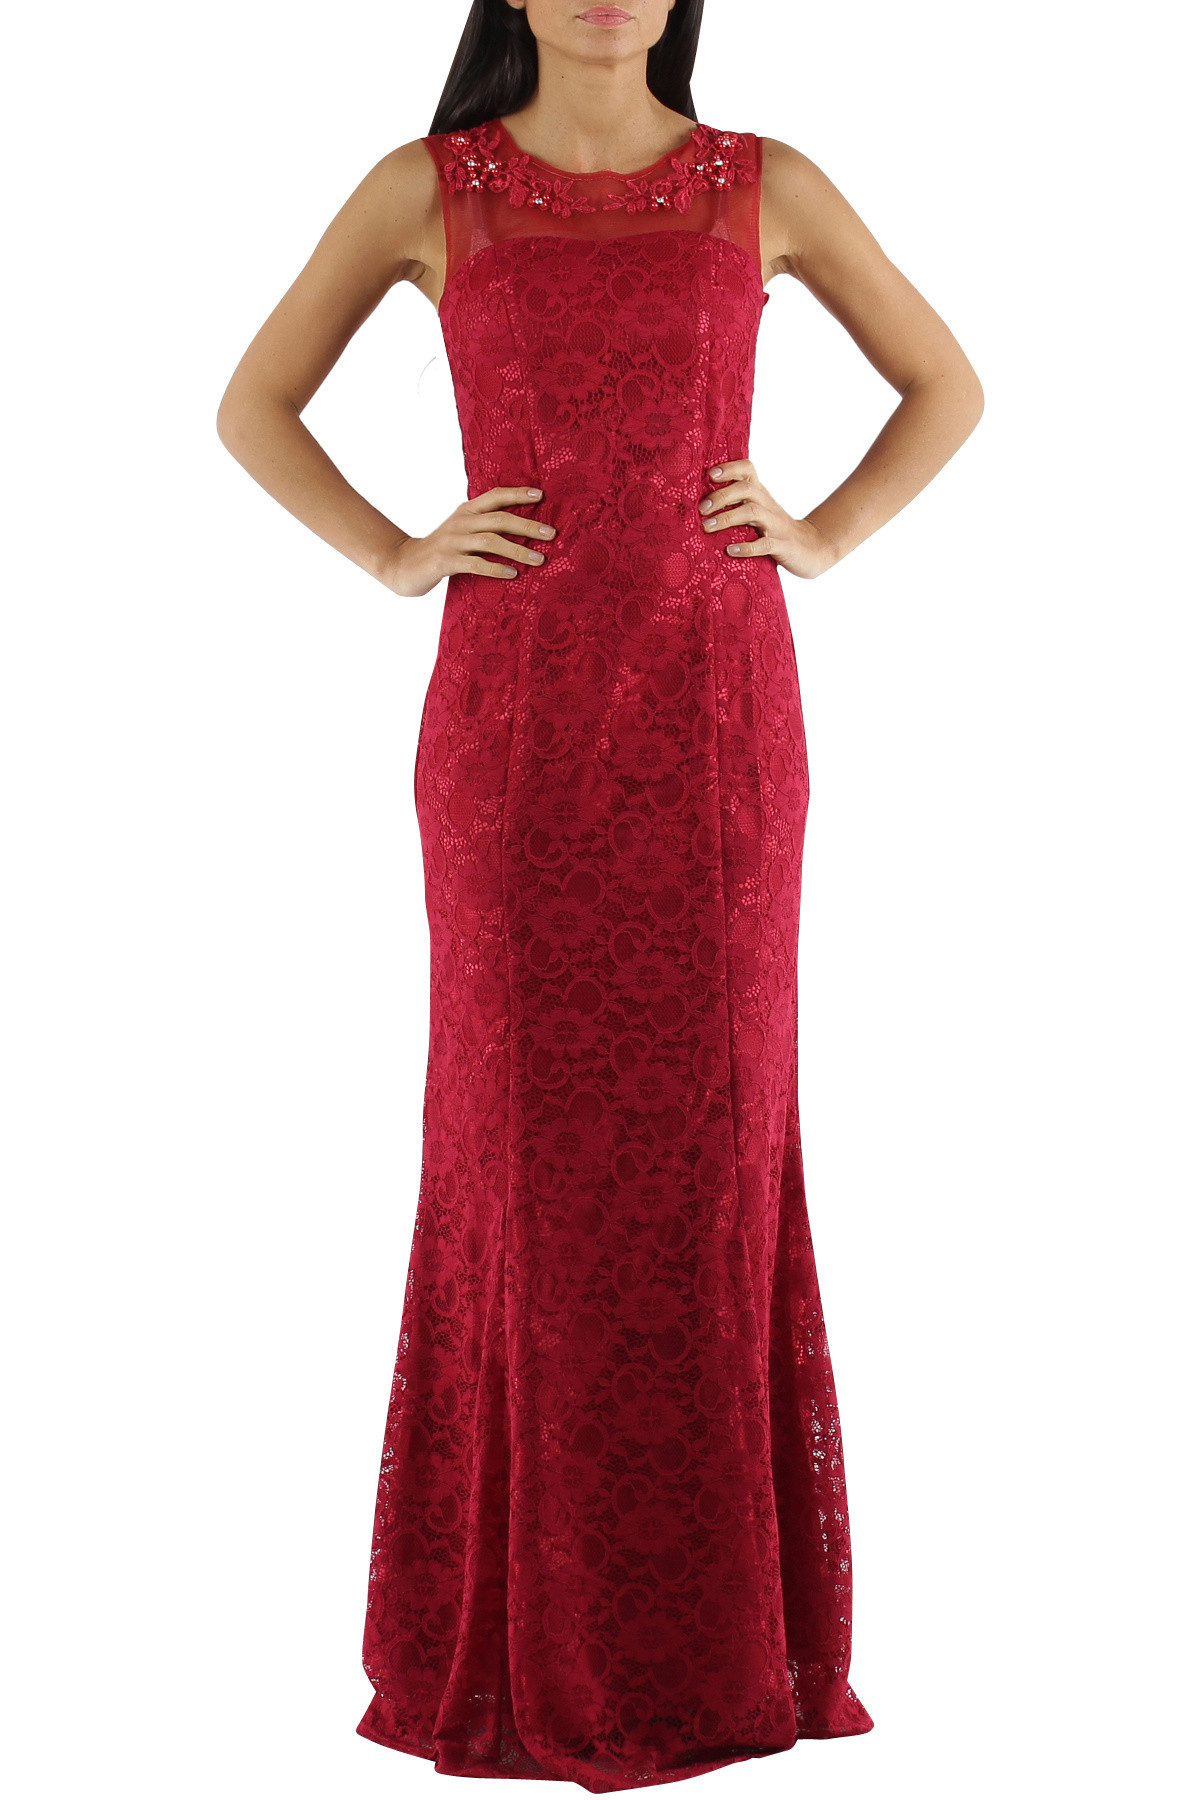 Spoločenské a plesové šaty krajkové dlhé luxusné CHARM'S Paris červené - Červená - CHARM'S Paris XS